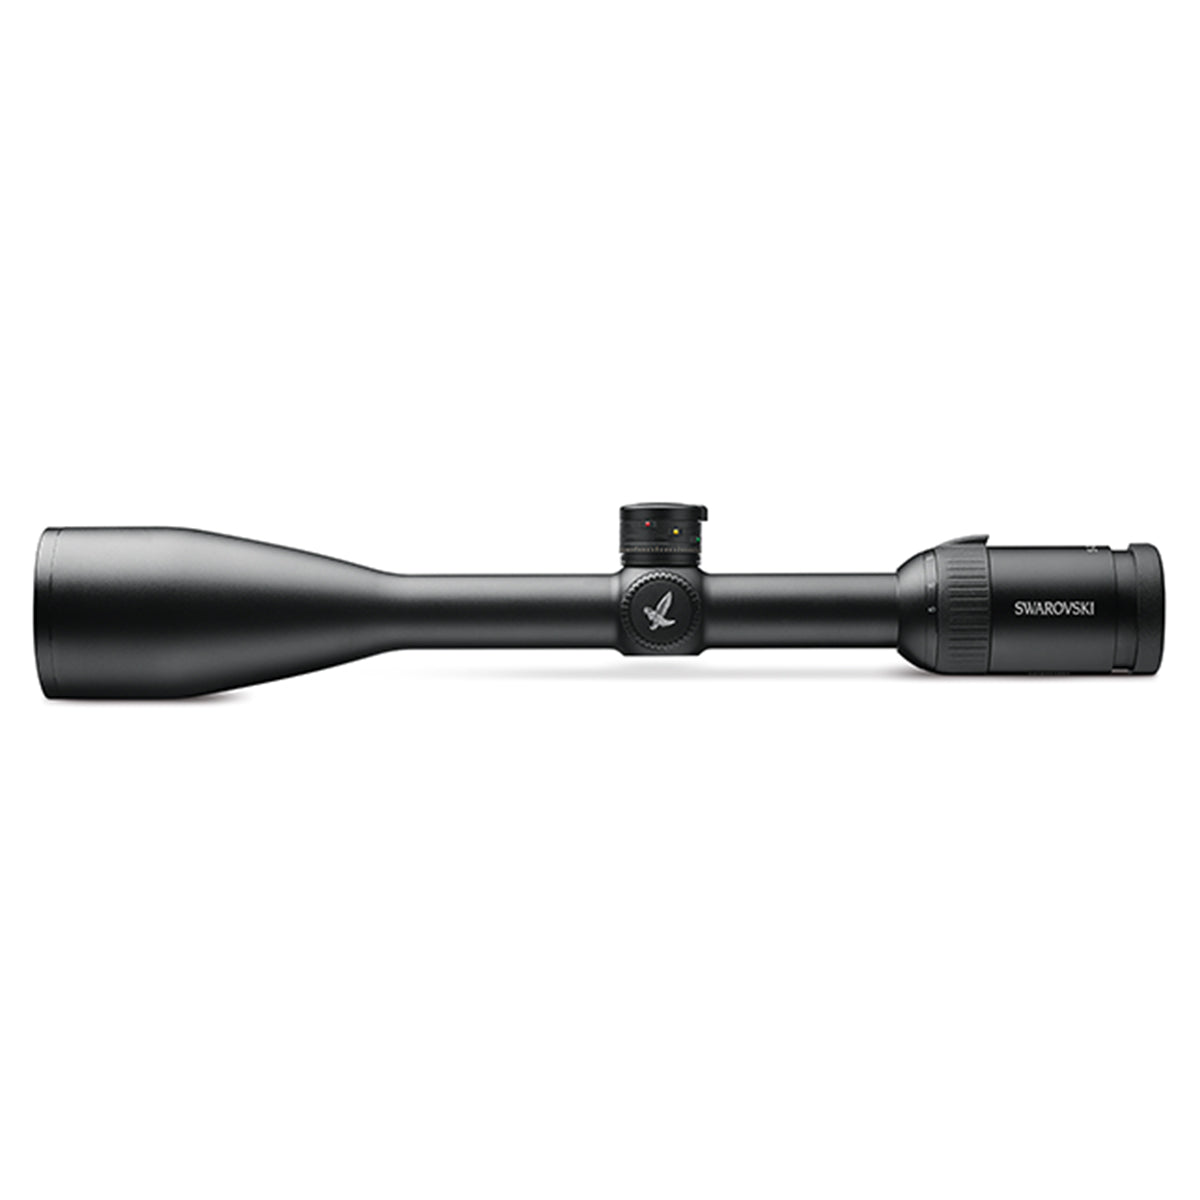 Swarovski Z5 5-25x52 P BT L Riflescope by Swarovski Optik | Optics - goHUNT Shop